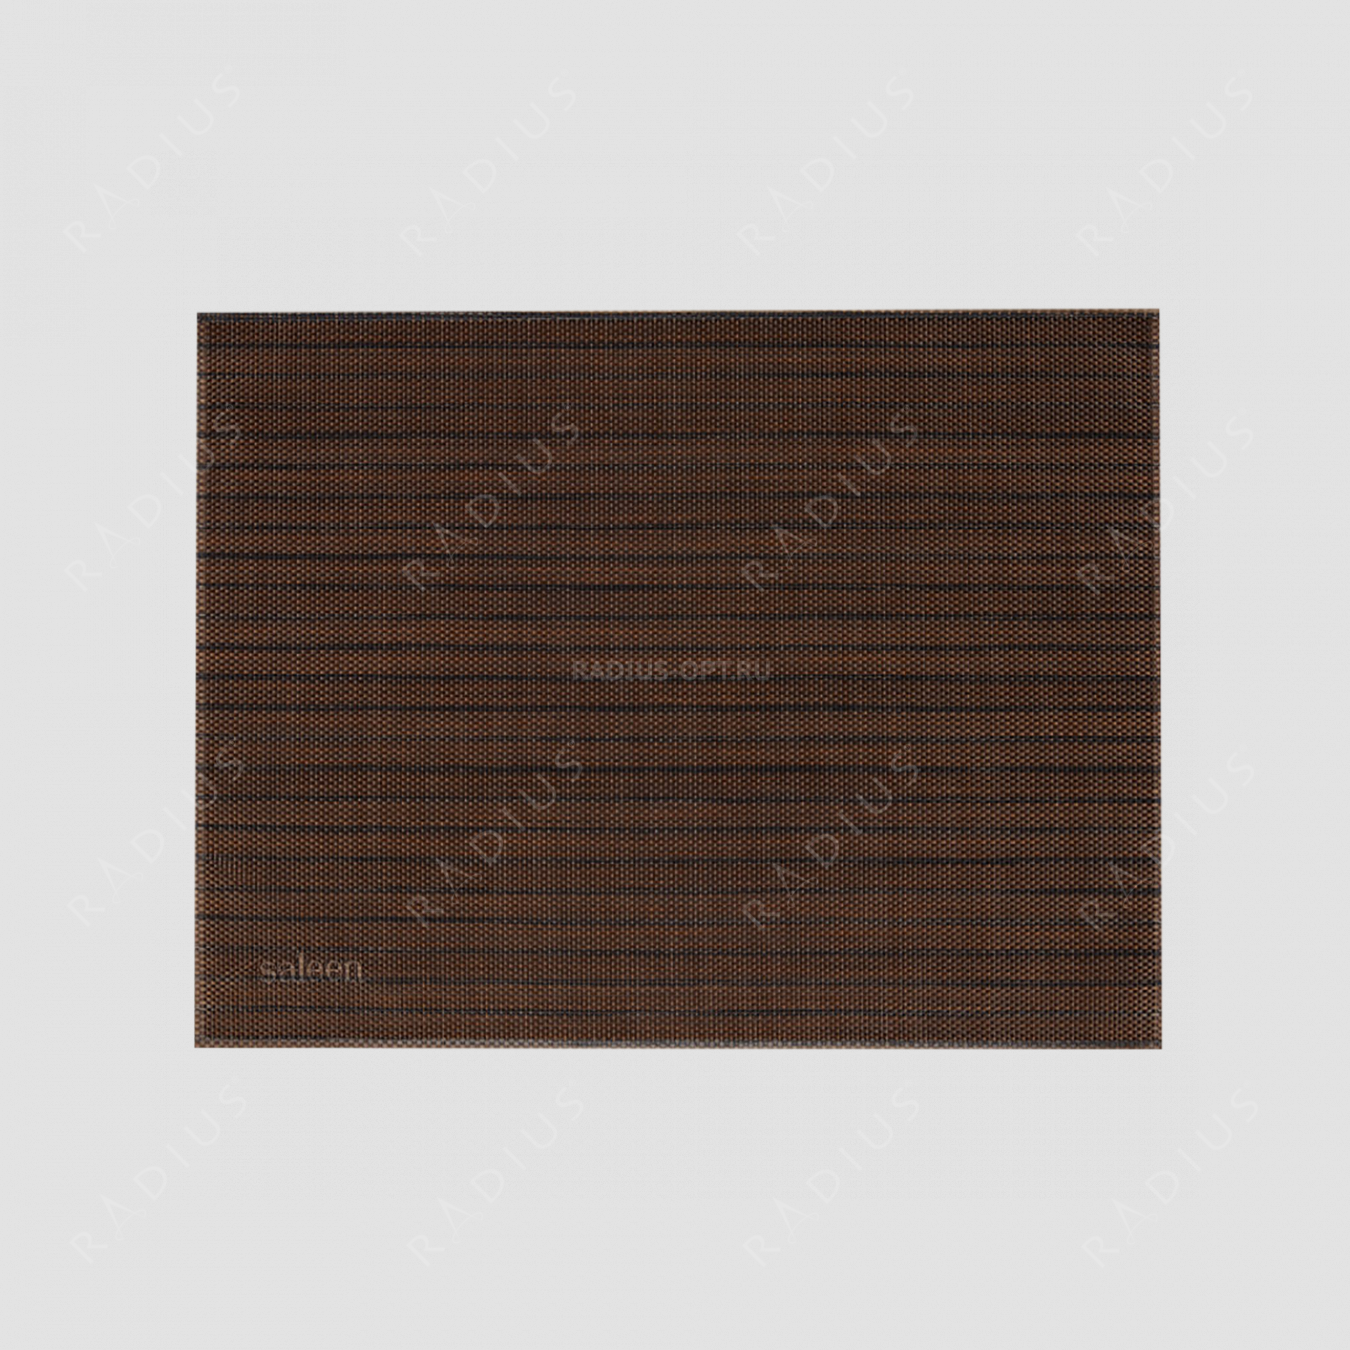 Салфетка подстановочная, винил, 32х42 см, цвет коричневый / черный, Uni, серия Saleen, Westmark, Германия